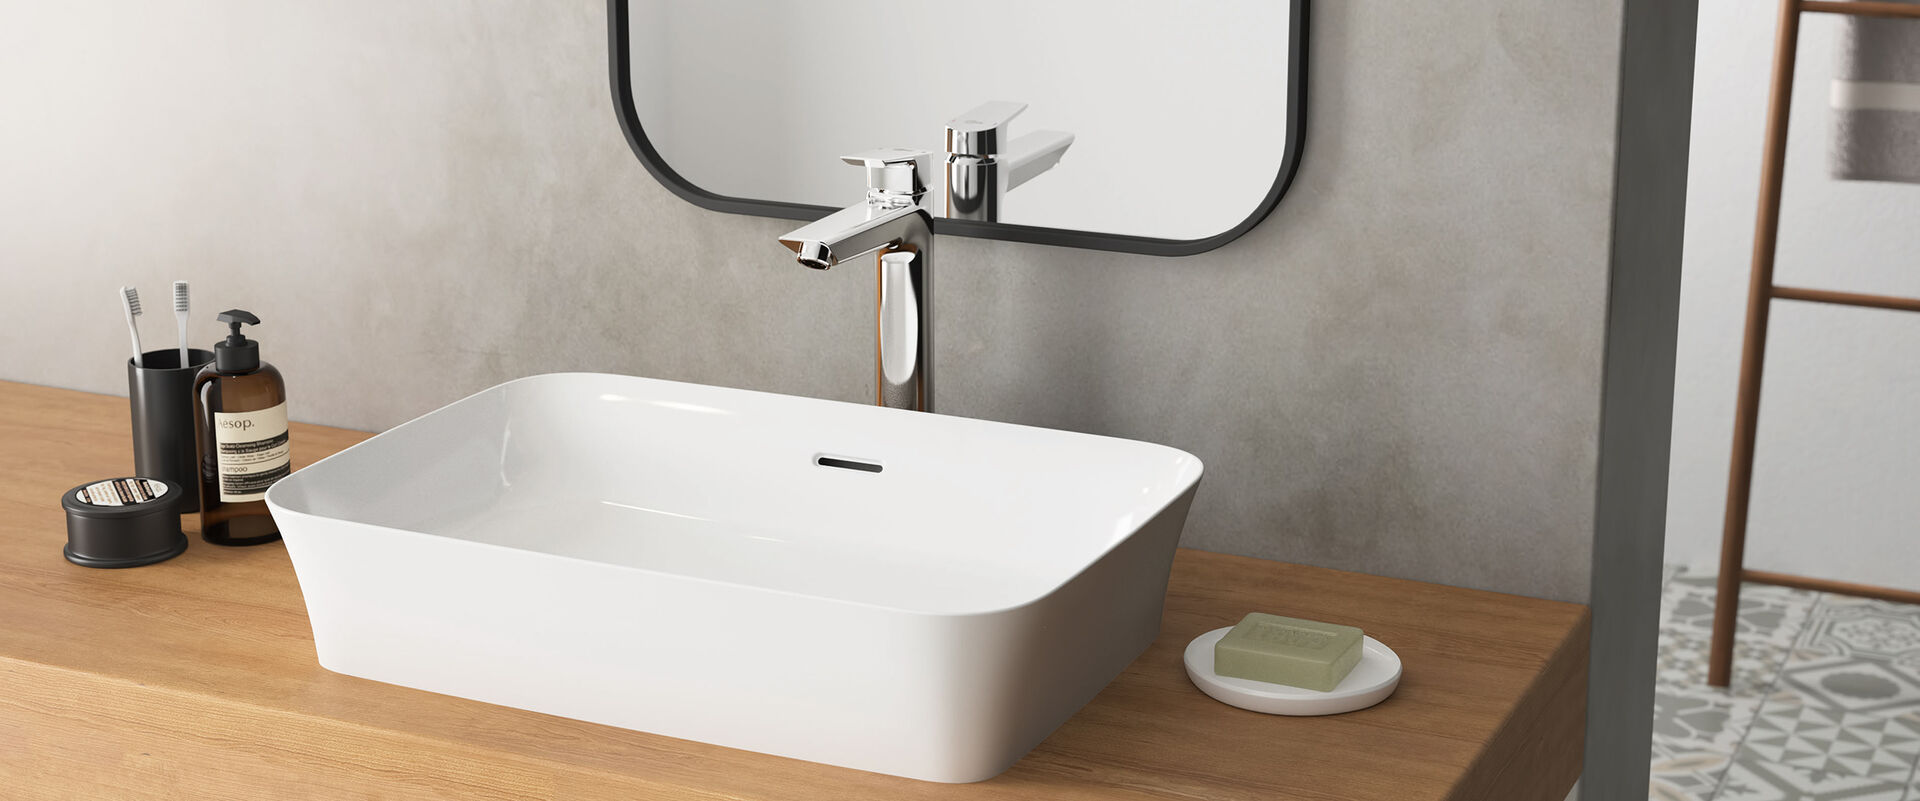 Waschbecken Ipalyss von Ideal Standard, dass auf einem hölzernen Waschtisch steht. Dahinter ist an einer grauen Wand ein Spiegel befestigt.